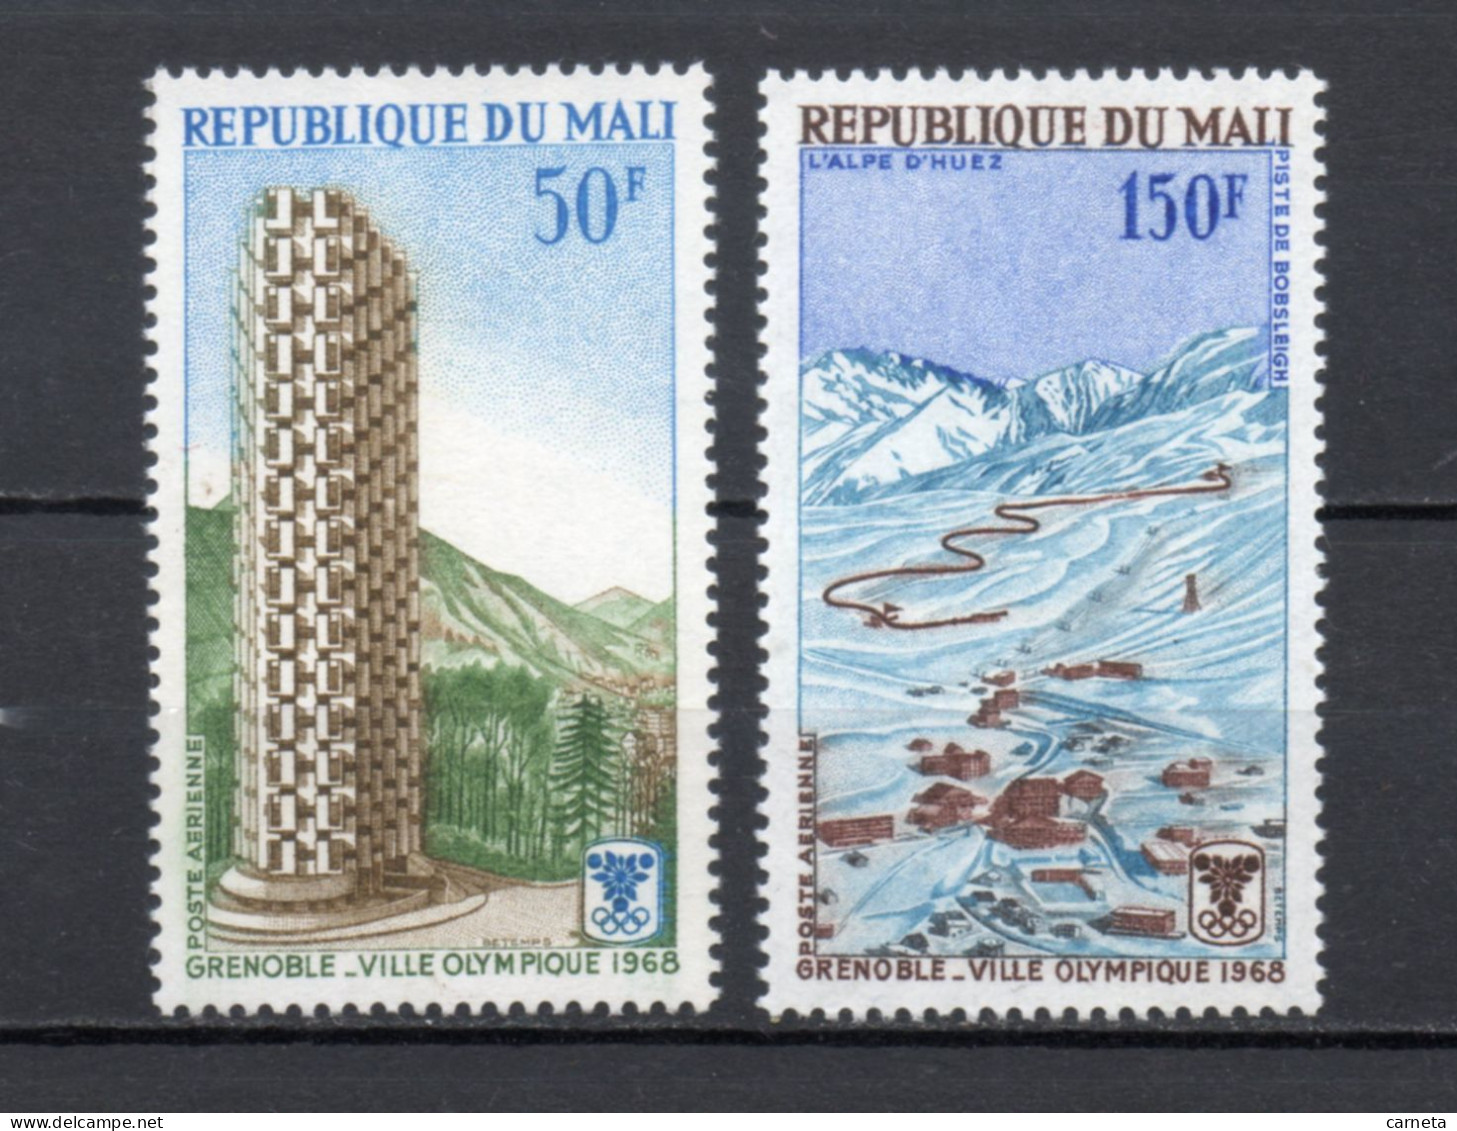 MALI  PA  N° 53 + 54    NEUFS SANS CHARNIERE  COTE 4.00€    JEUX OLYMPIQUES GRENOBLE - Mali (1959-...)